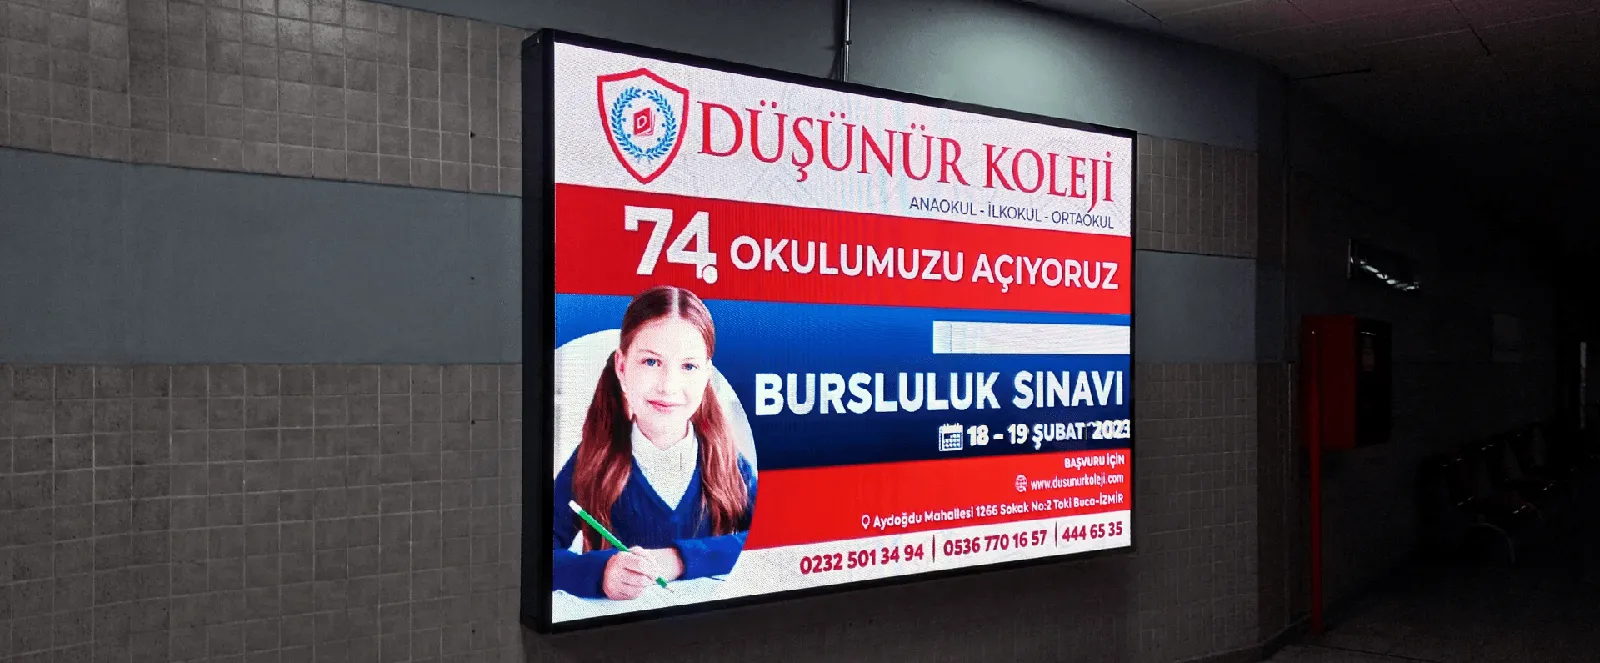 ONTV İzban İzmir